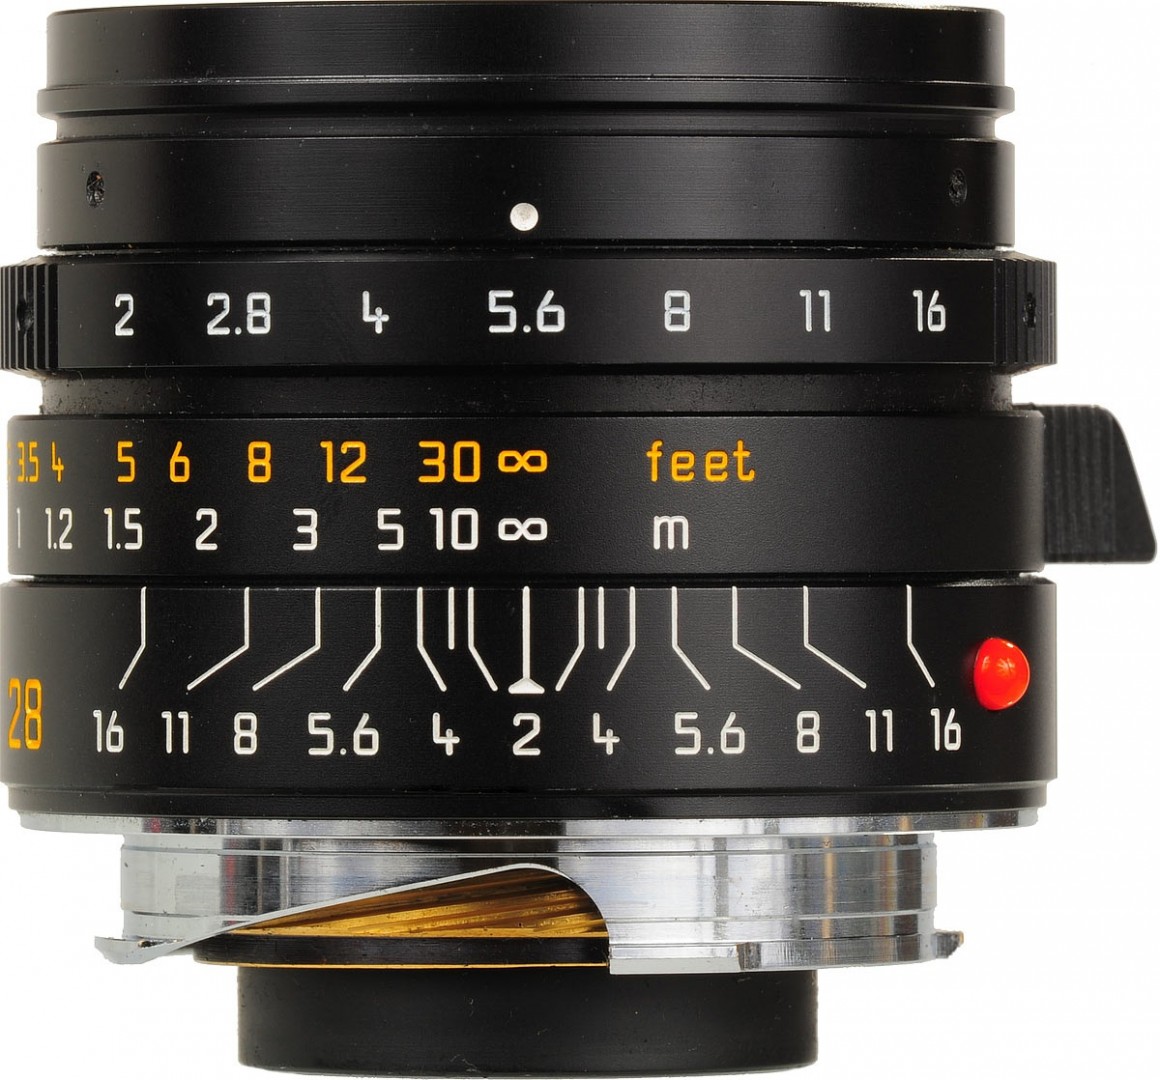 Leica SUMMICRON-M 28mm F/2 ASPH. [I]